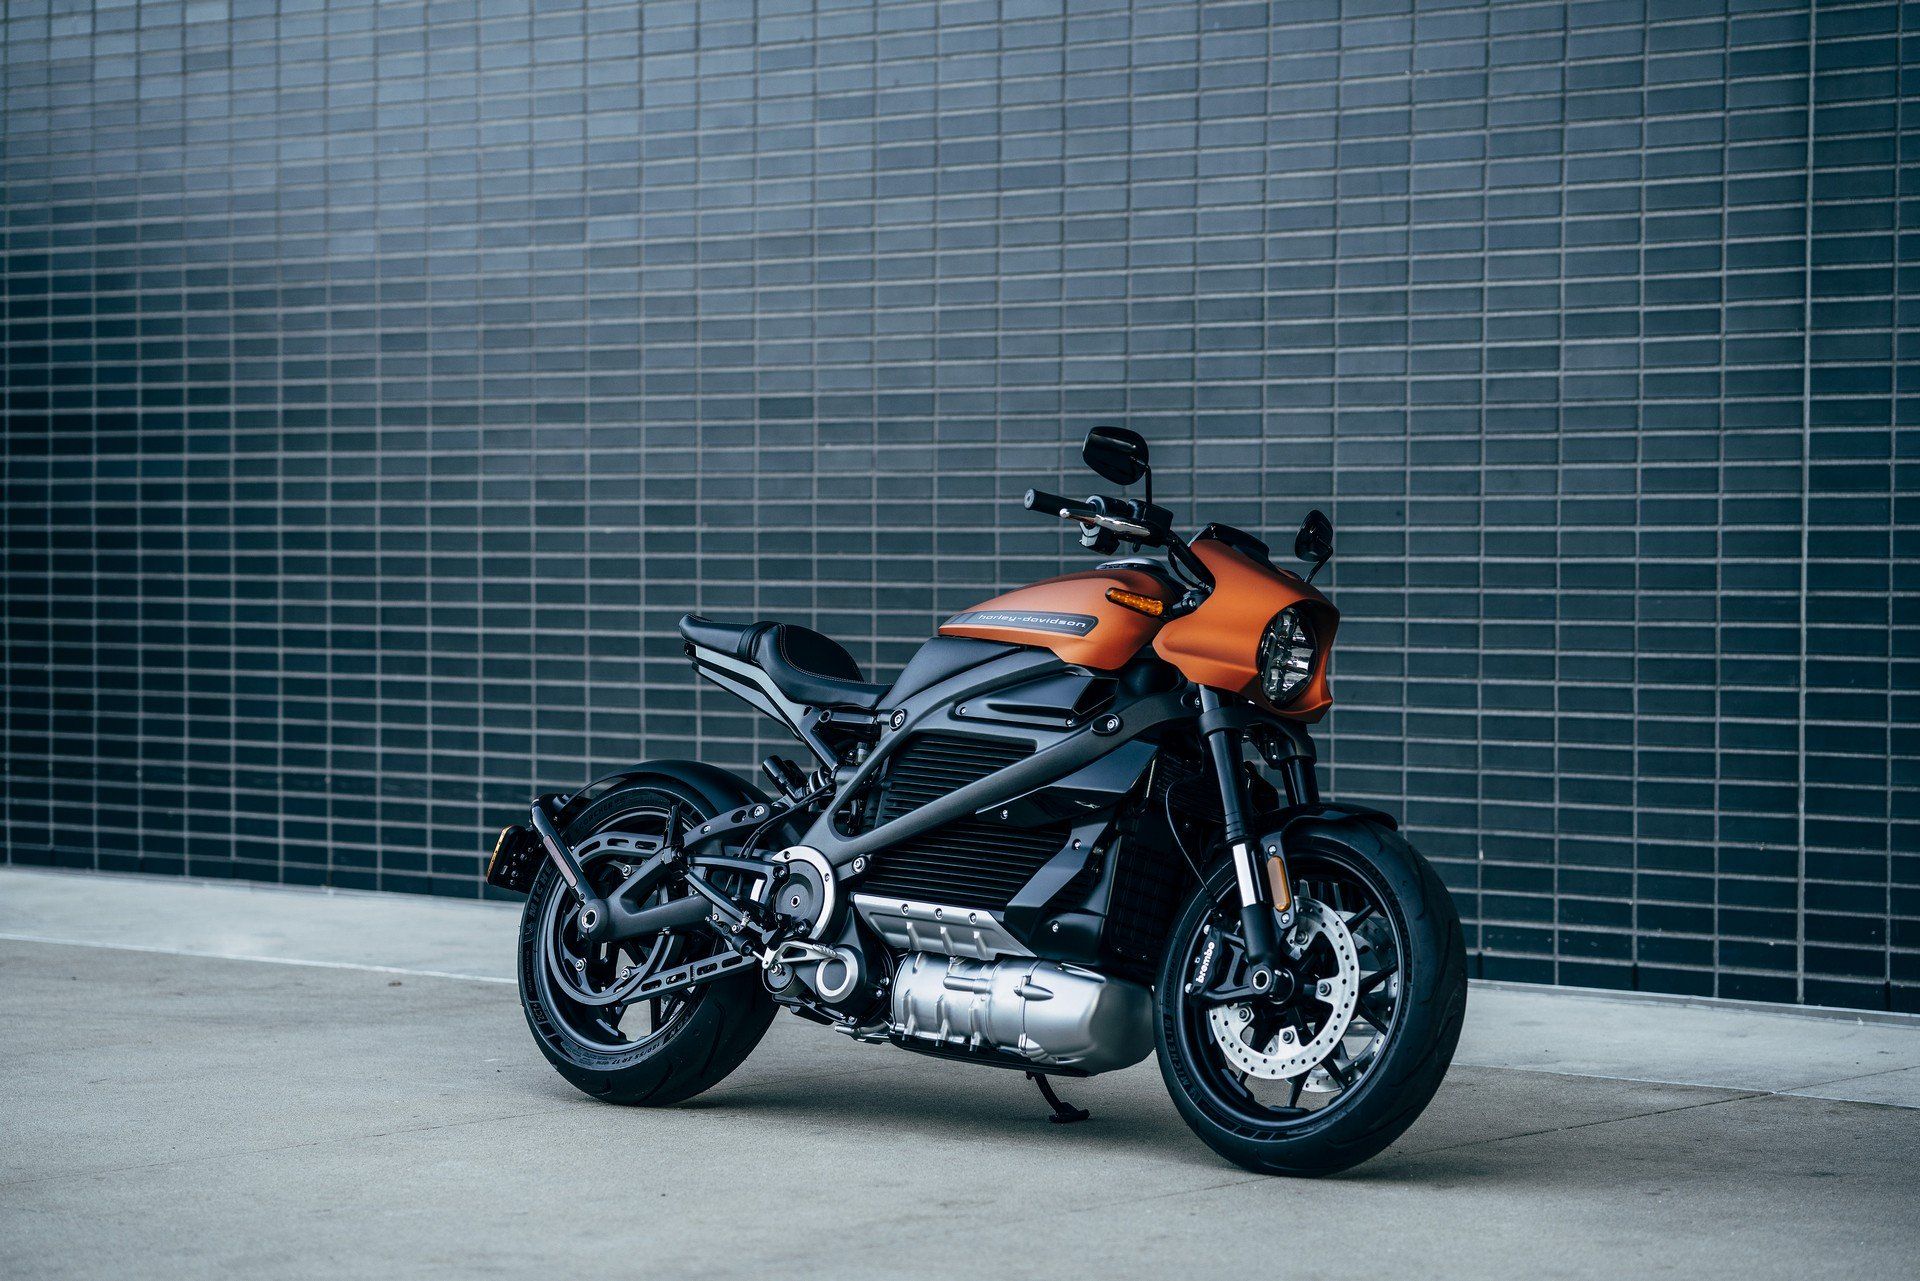 Harley Davidson Halts LiveWire Electric Bike Production Over